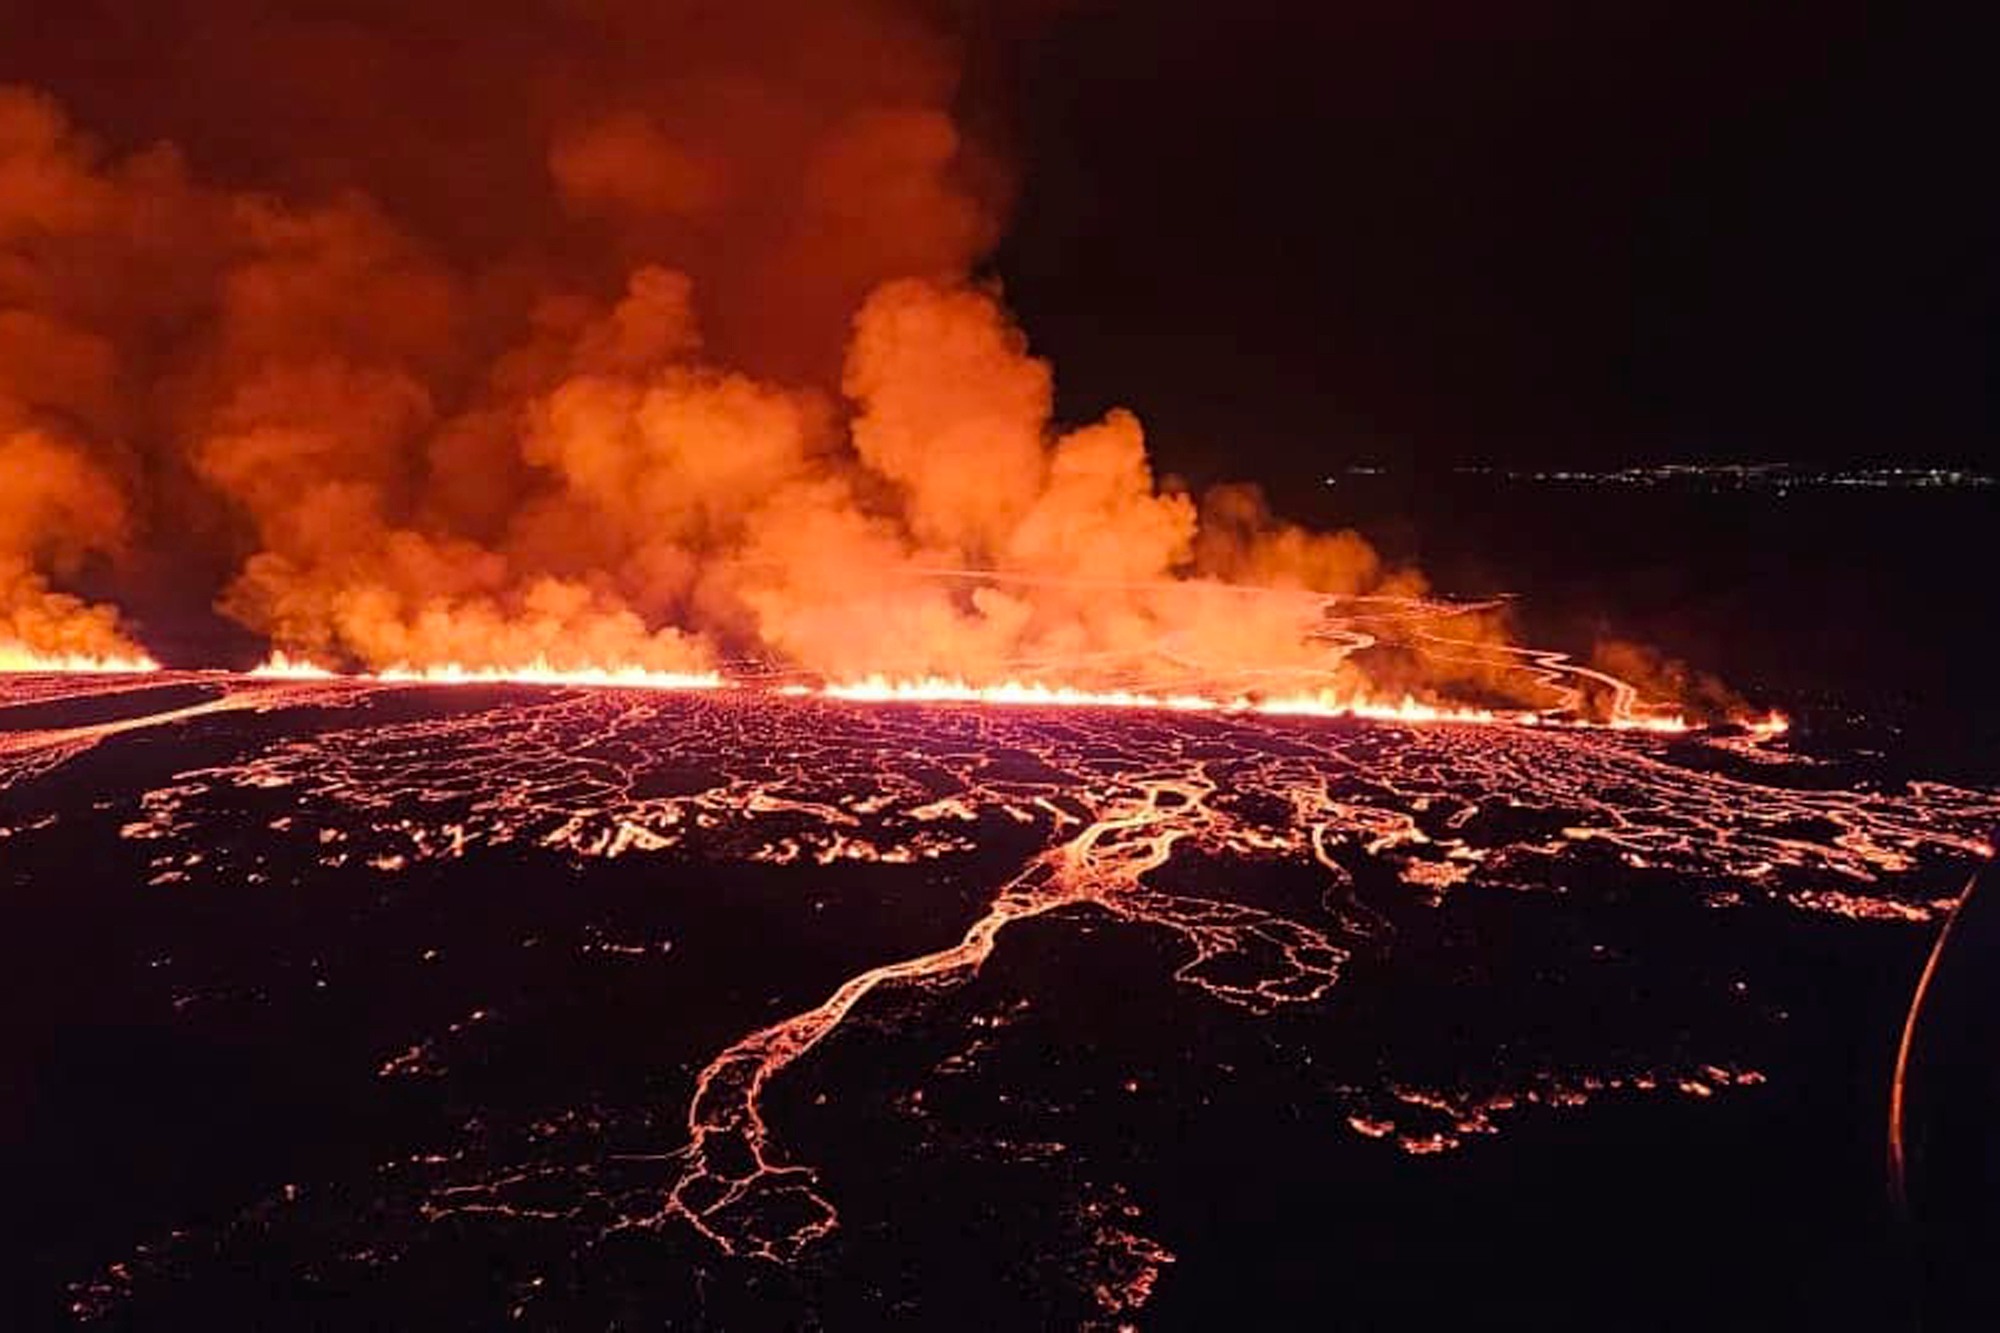 Ισλανδία: Συνεχίζεται η ηφαιστειακή δραστηριότητα στη χερσόνησο Ρέικιανες – Δεν κινδυνεύει η πόλη Γκρίνταβικ